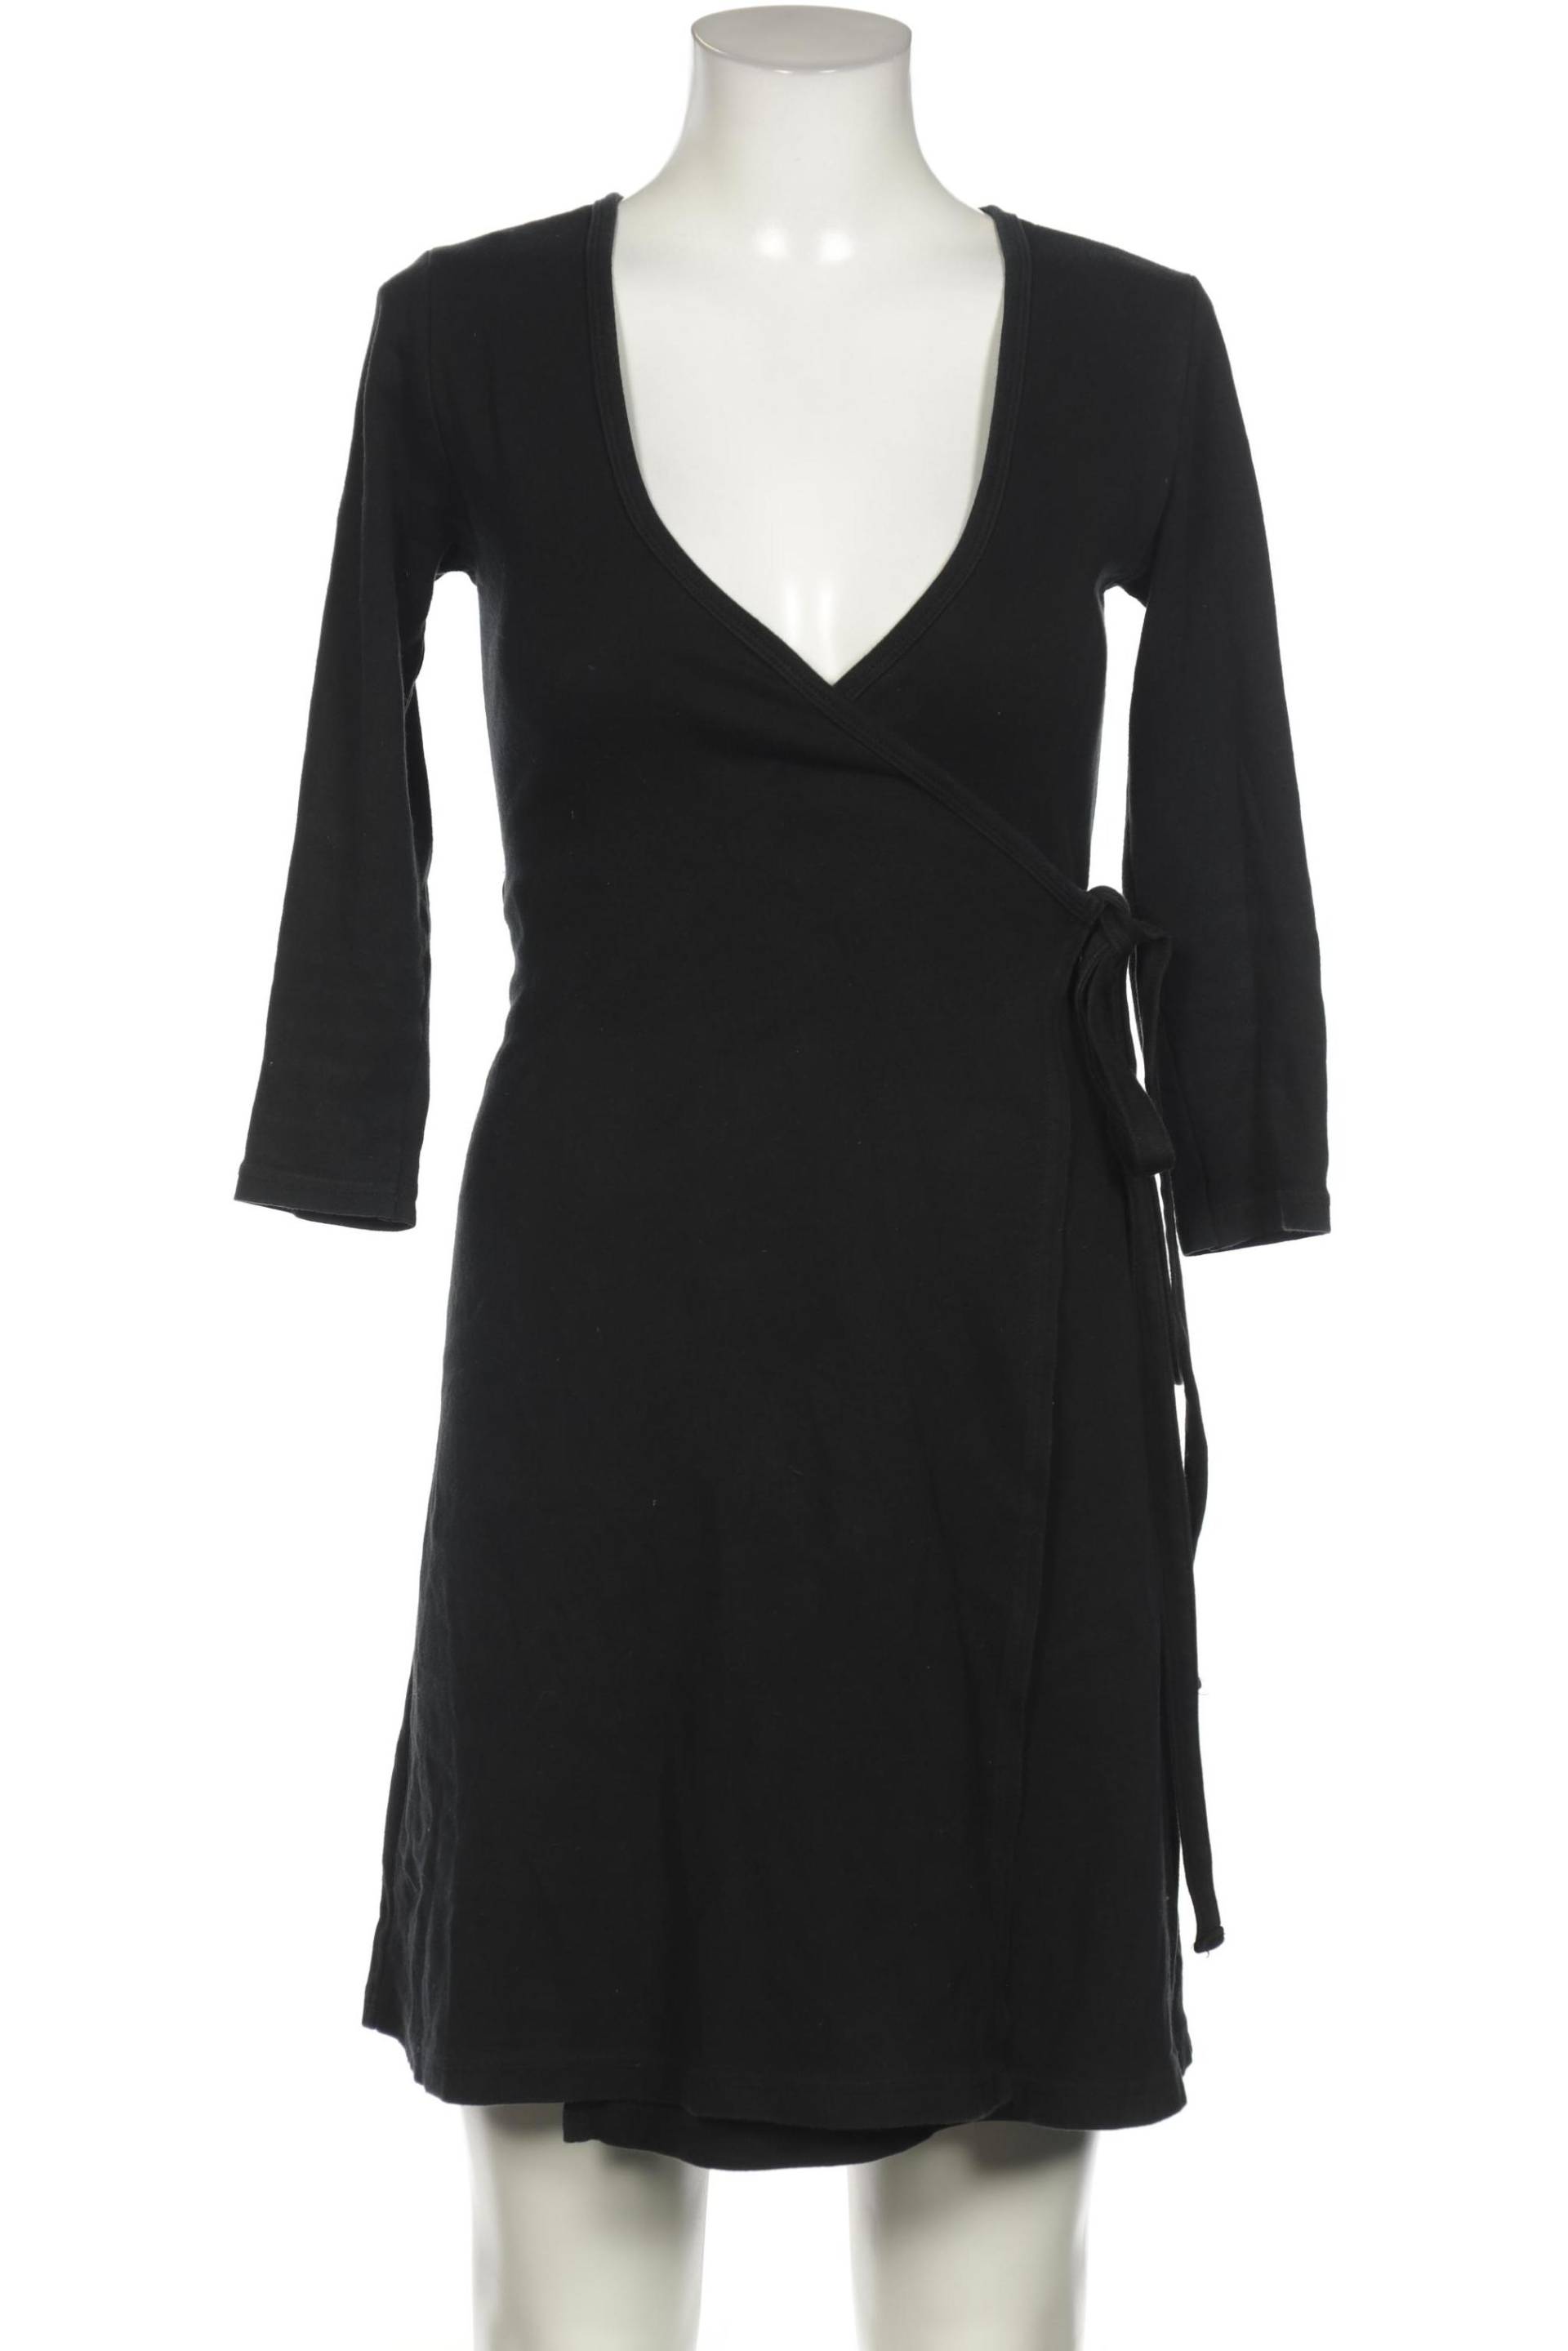 American Apparel Damen Kleid, schwarz, Gr. 36 von American Apparel